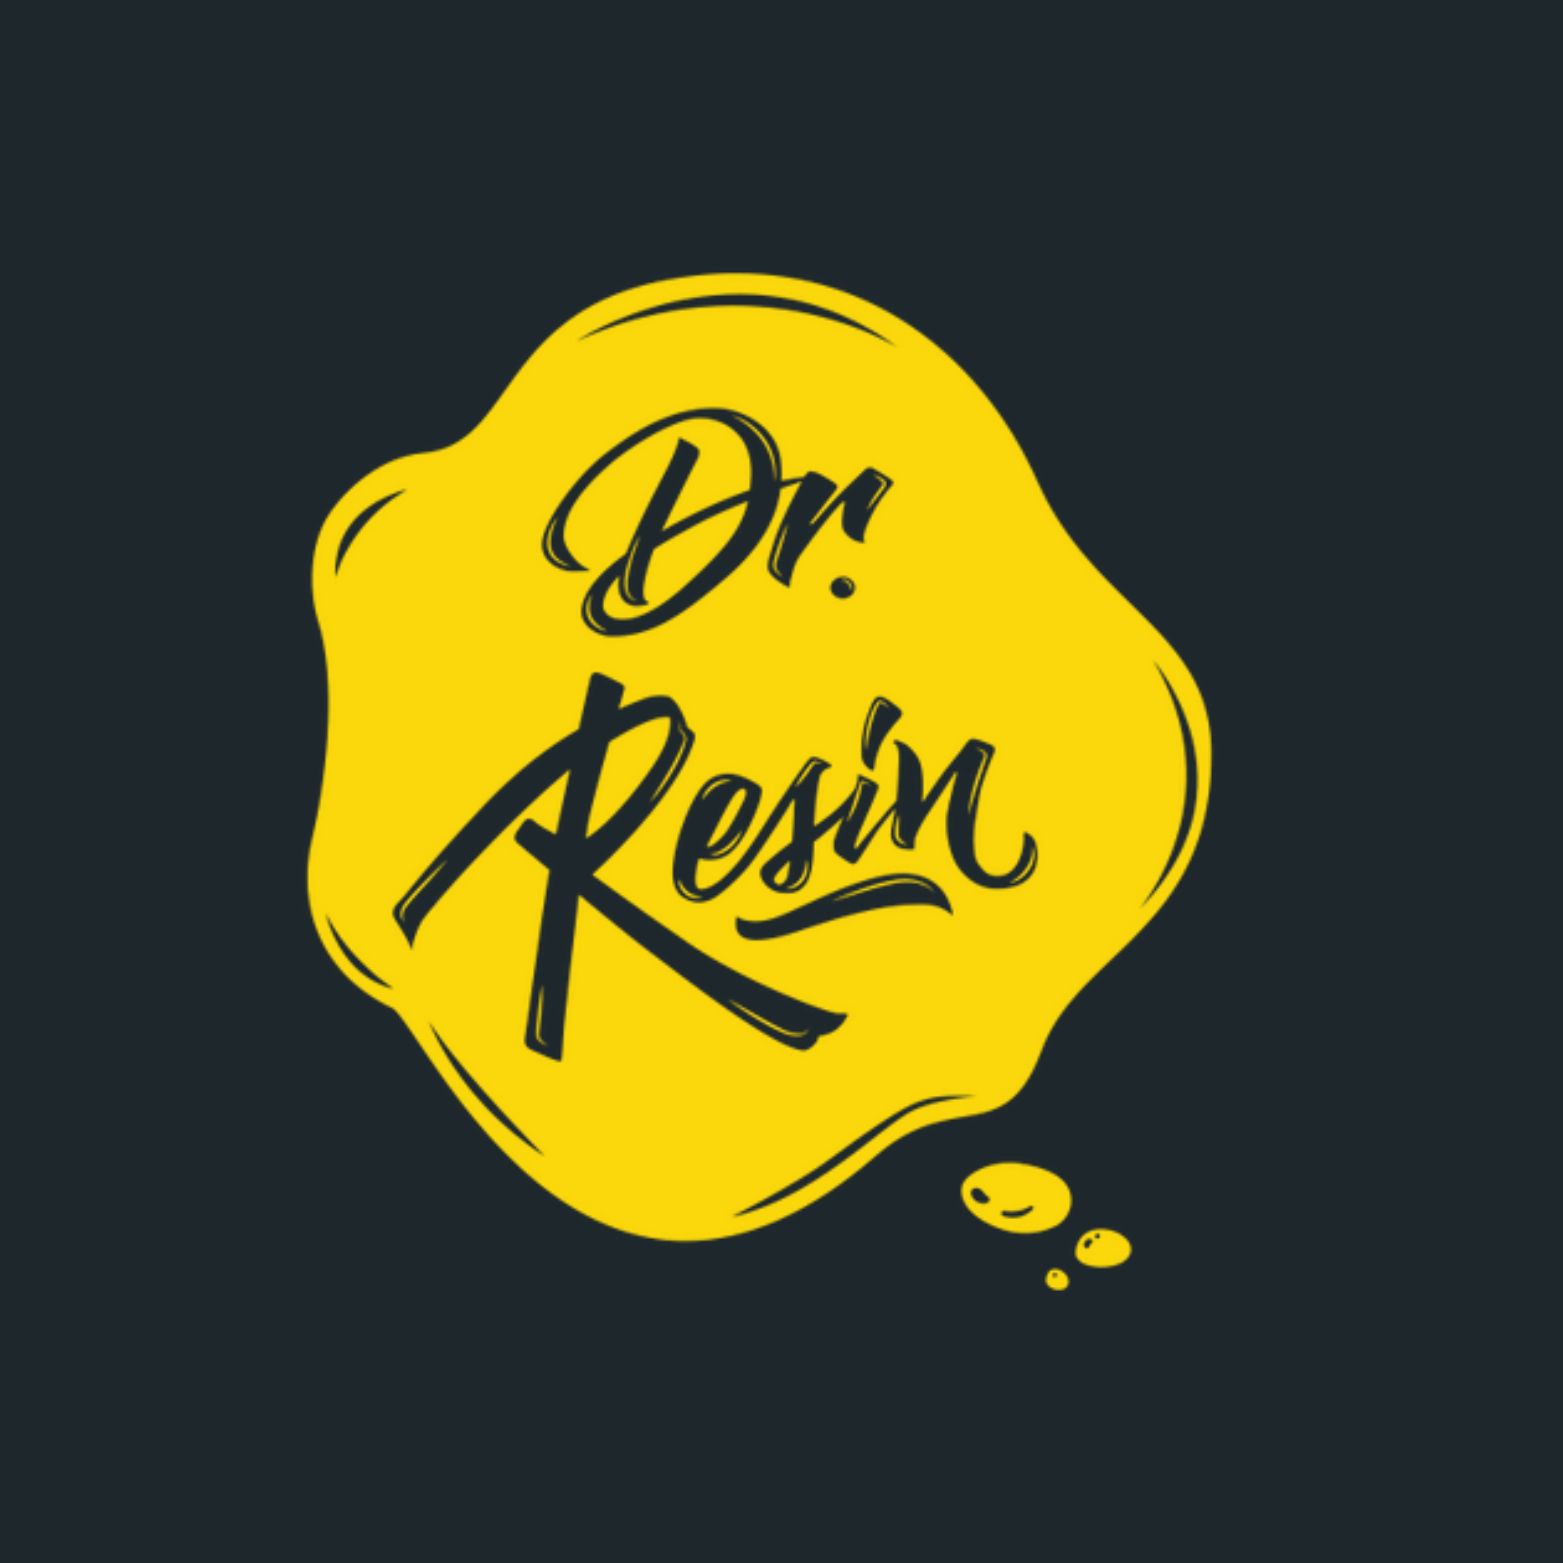 Dr Resin cannabis club logo